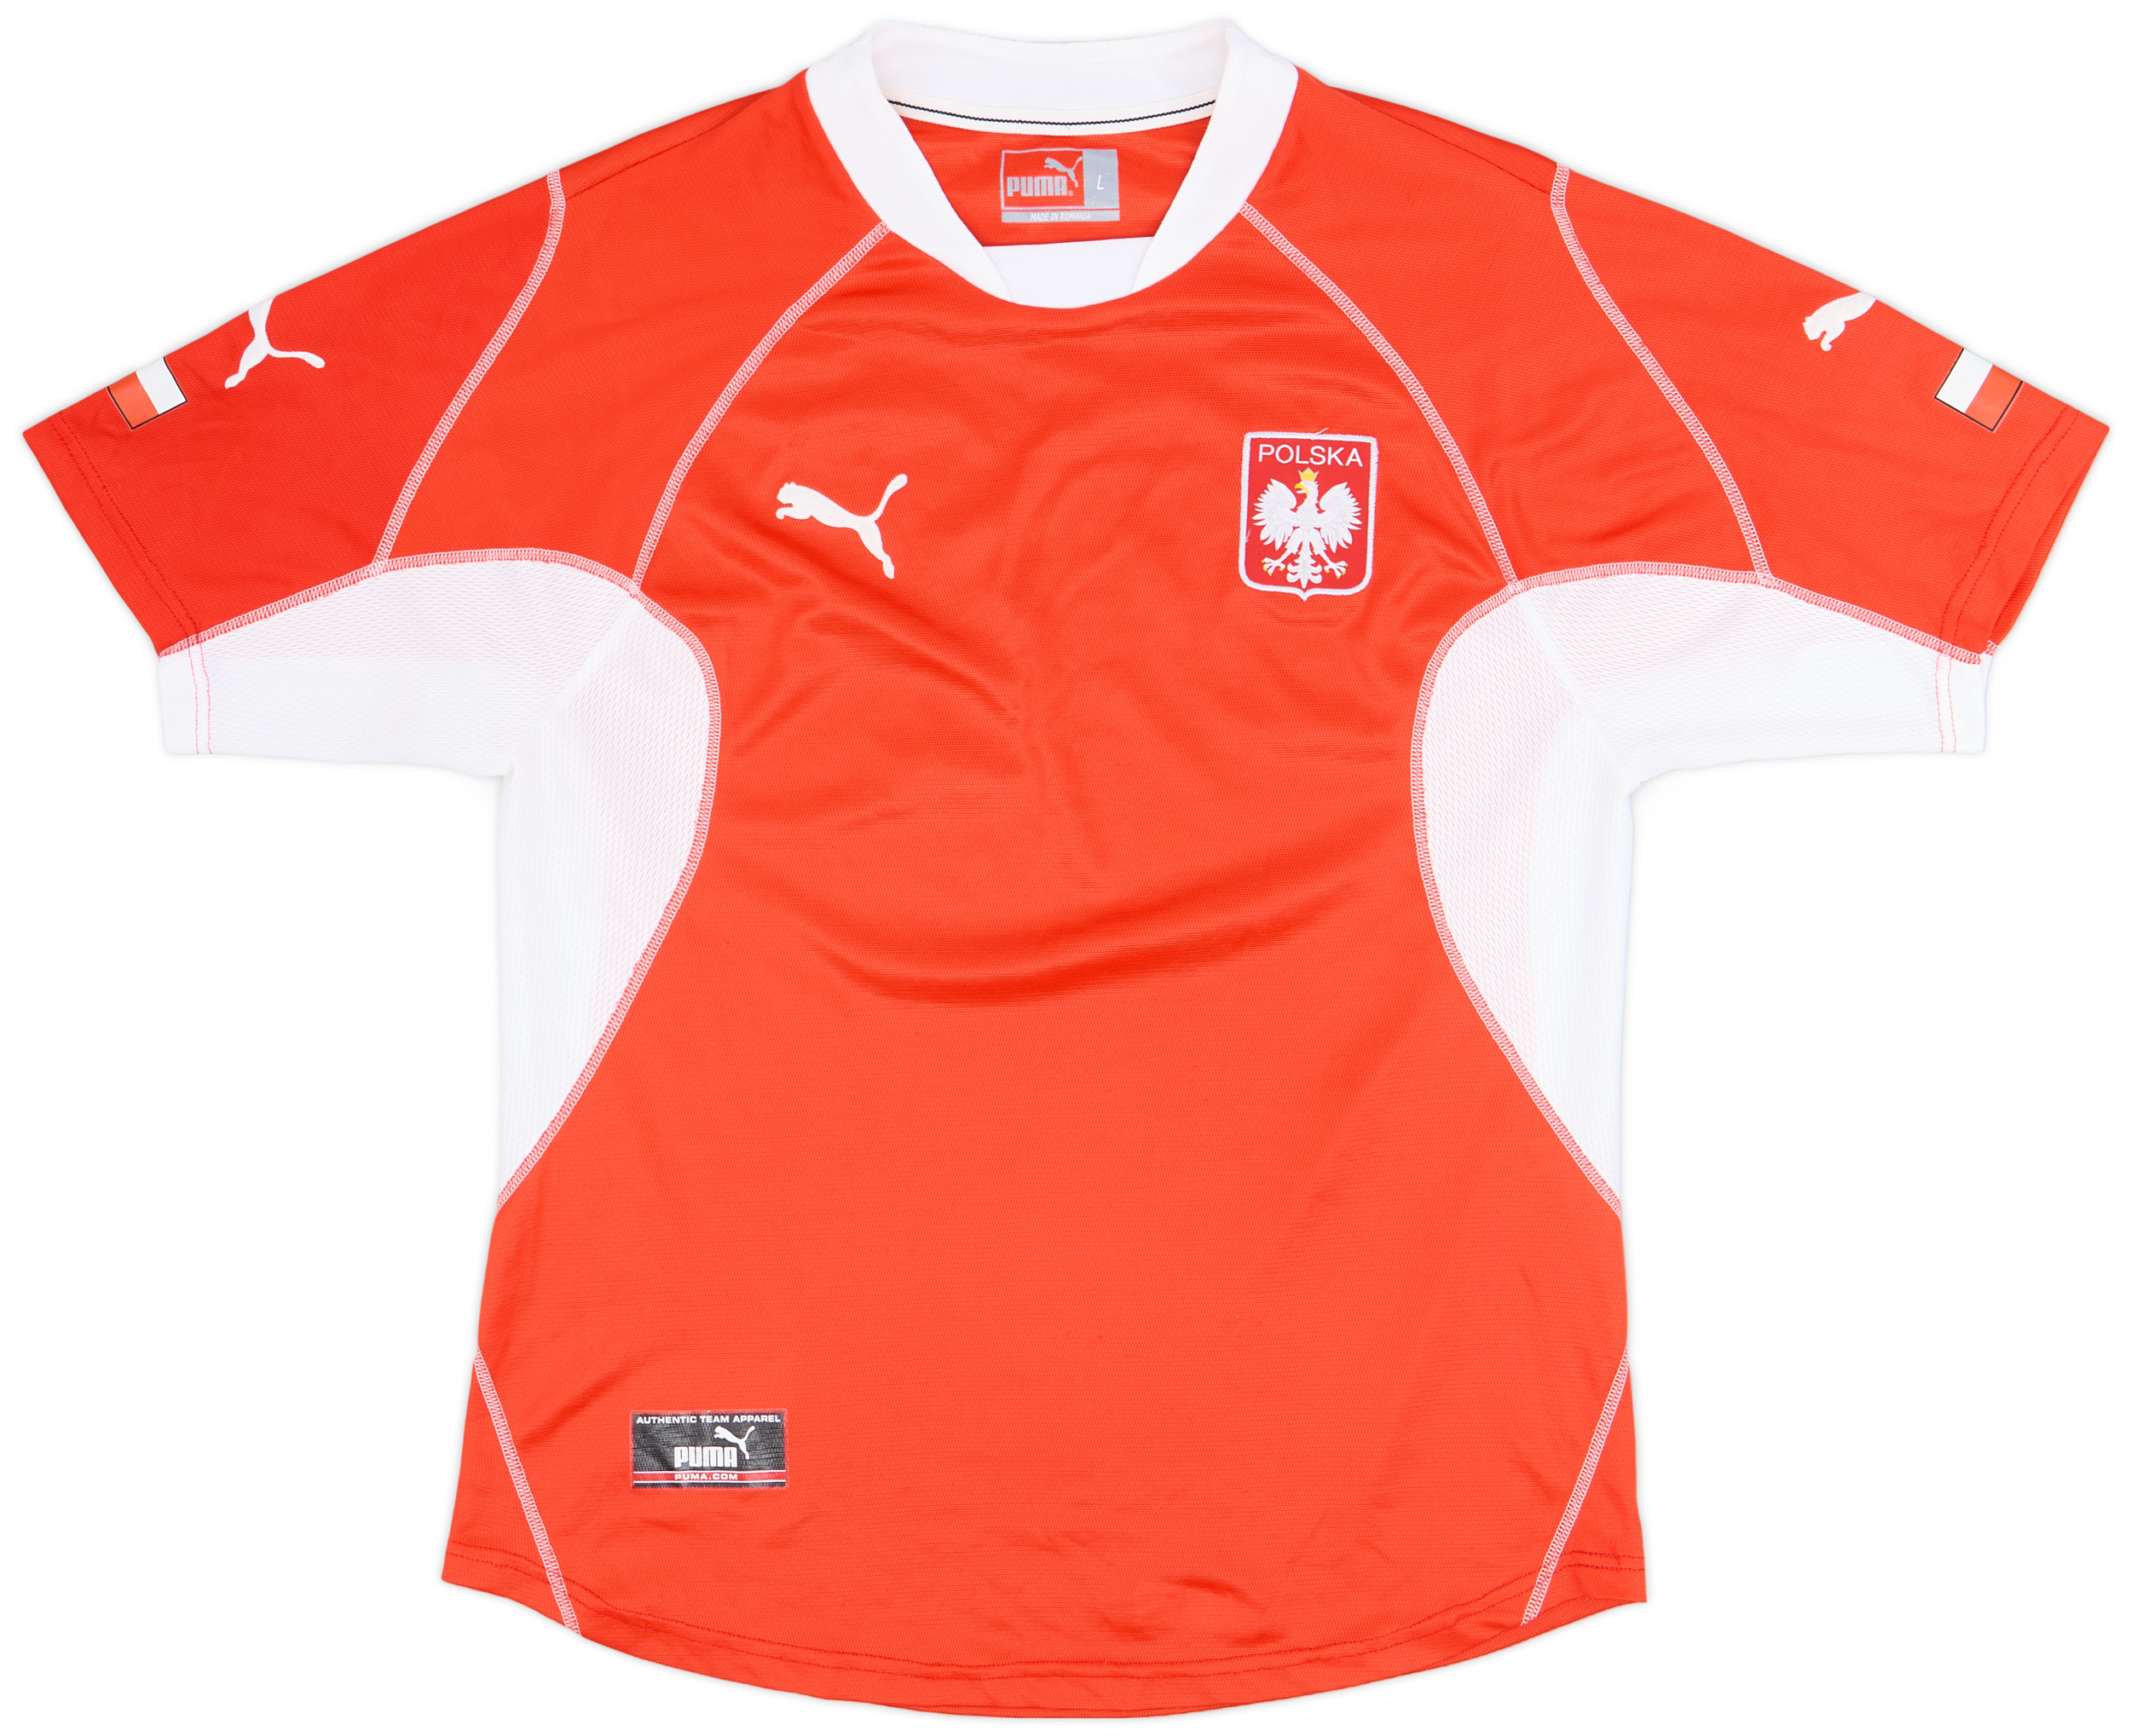 2002-04 Poland Away Shirt - 9/10 - ()